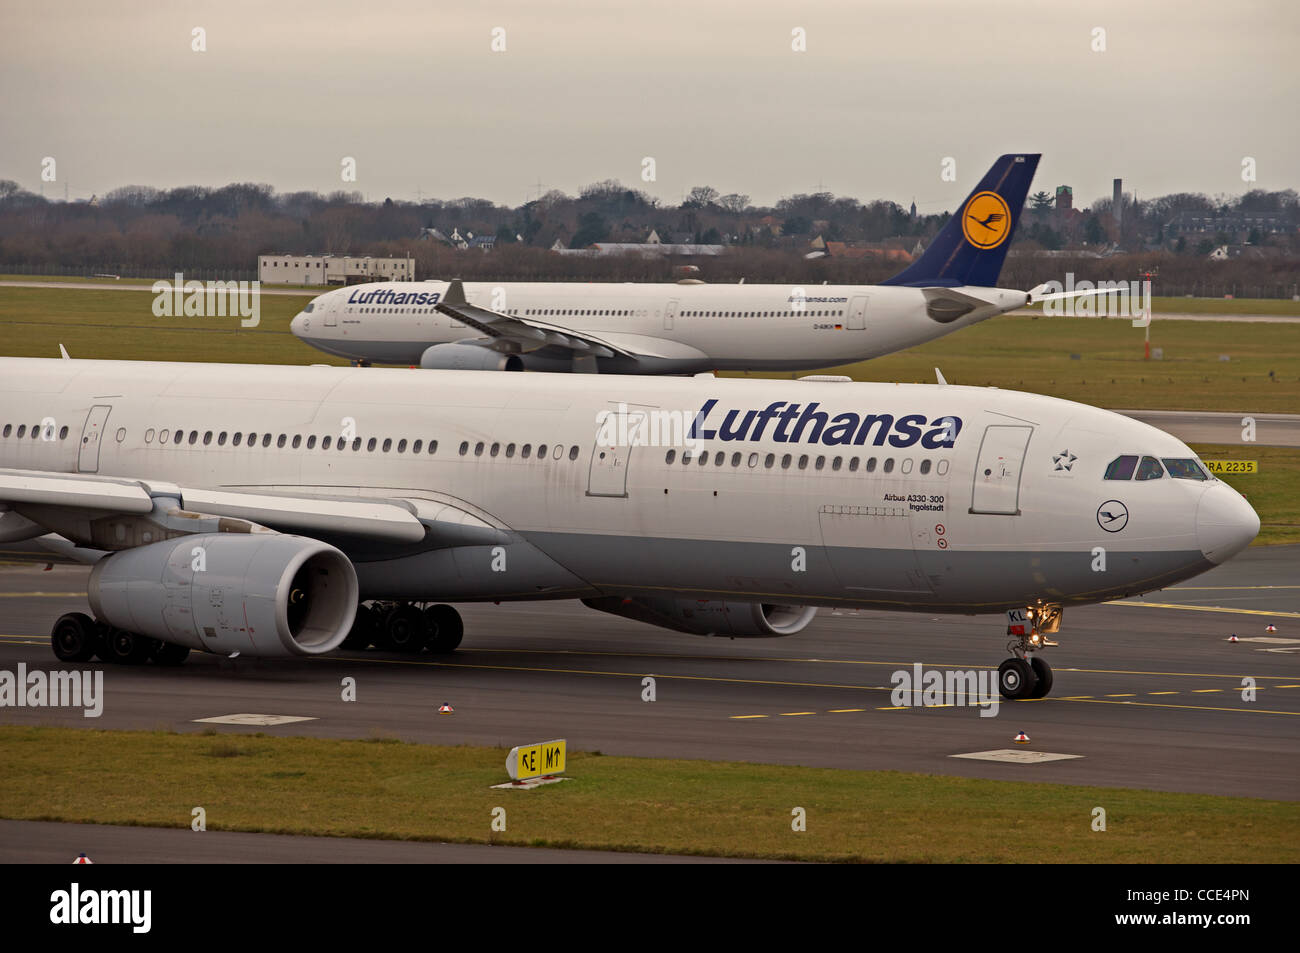 Les avions de la Lufthansa, l'aéroport international de Düsseldorf Allemagne Banque D'Images